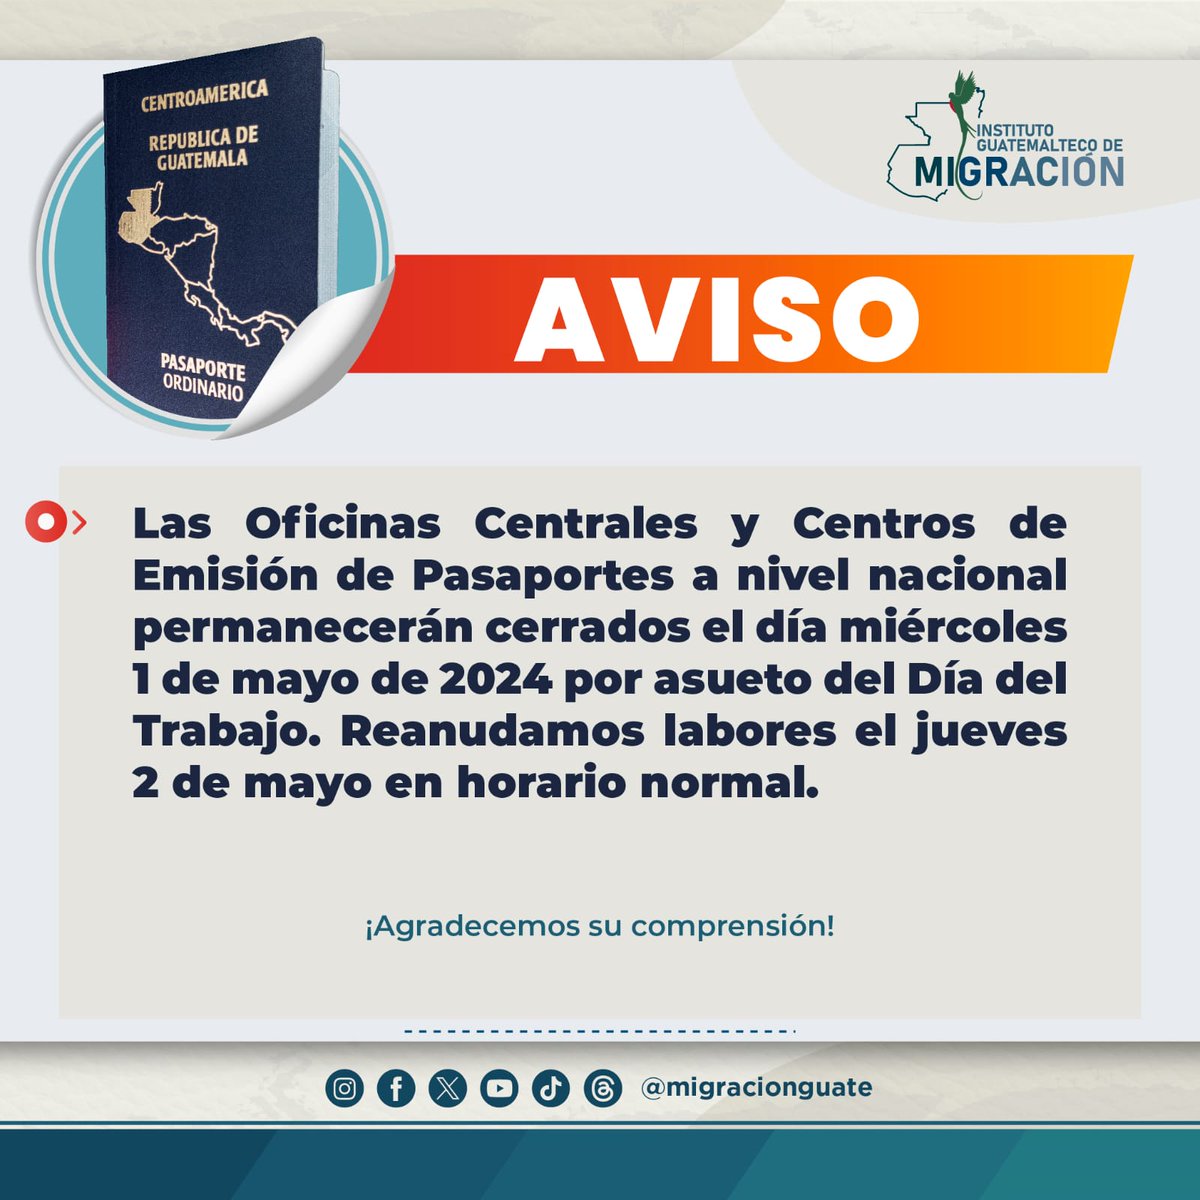 #Aviso | Las Oficinas Centrales y Centros de Emisión de Pasaportes a nivel nacional permanecerán cerrados el día miércoles 1 de mayo.